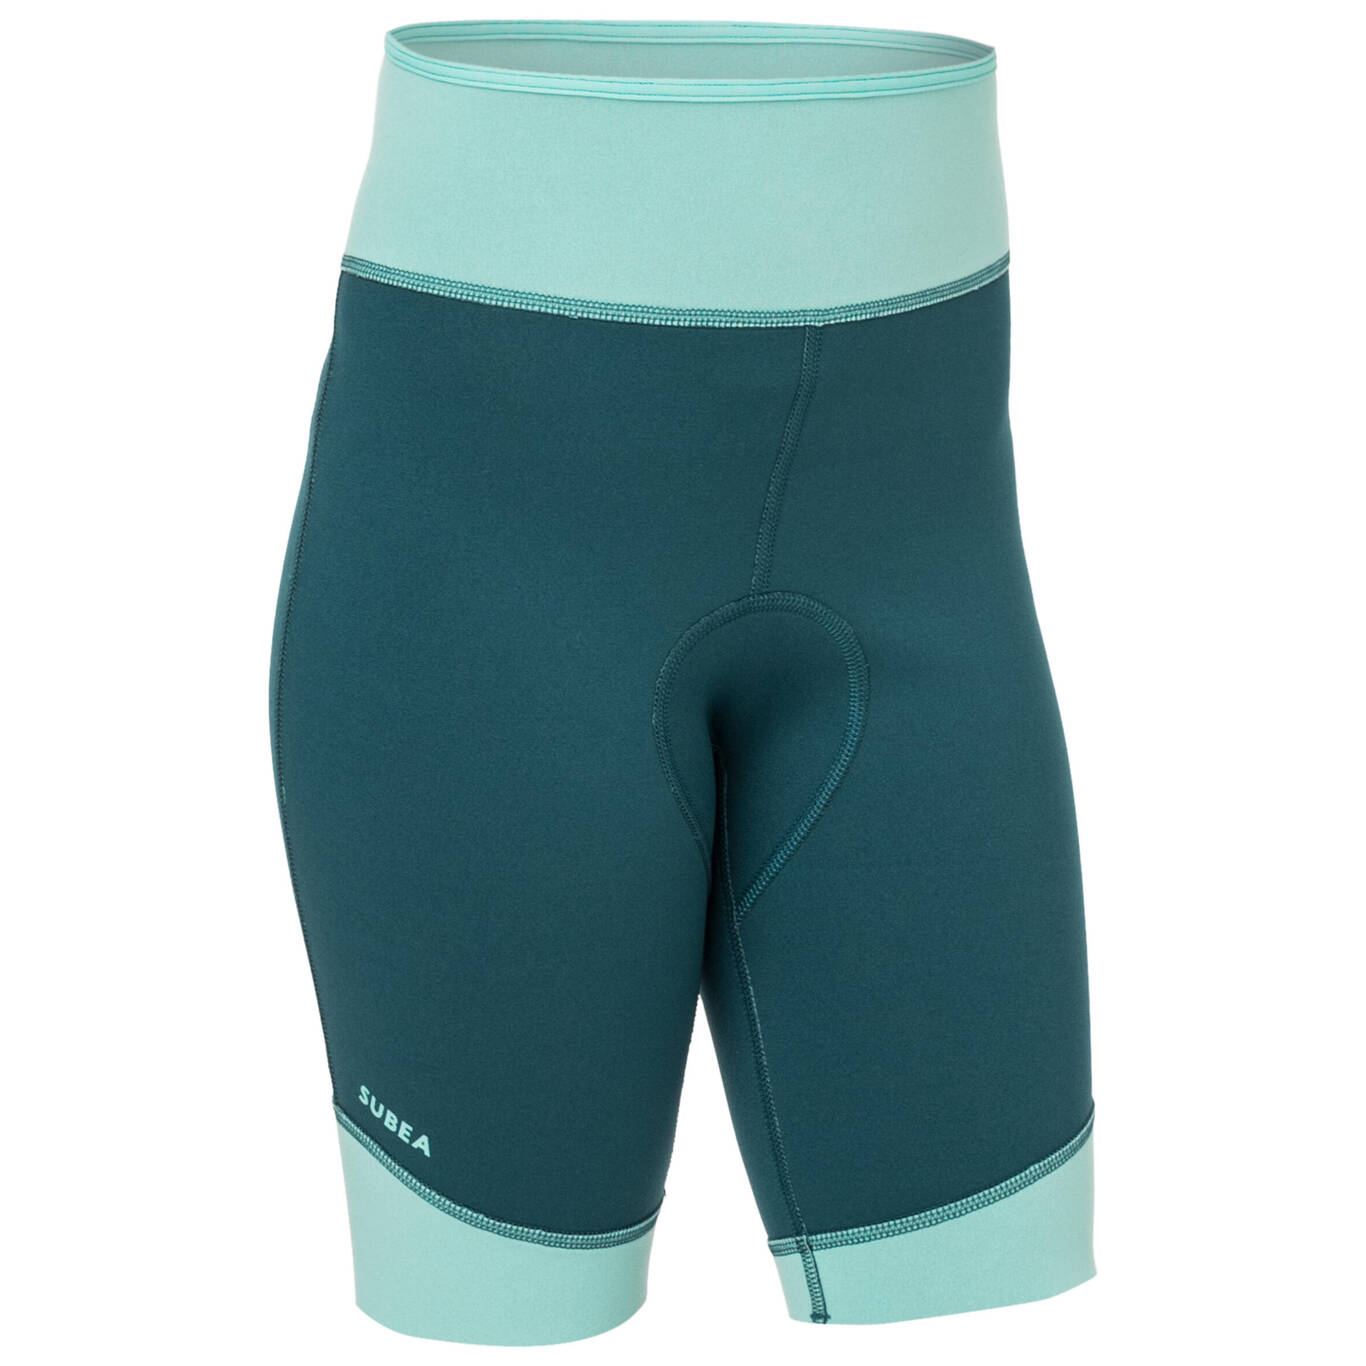 Kids' neoprene snorkelling shorts SNK 500 JR